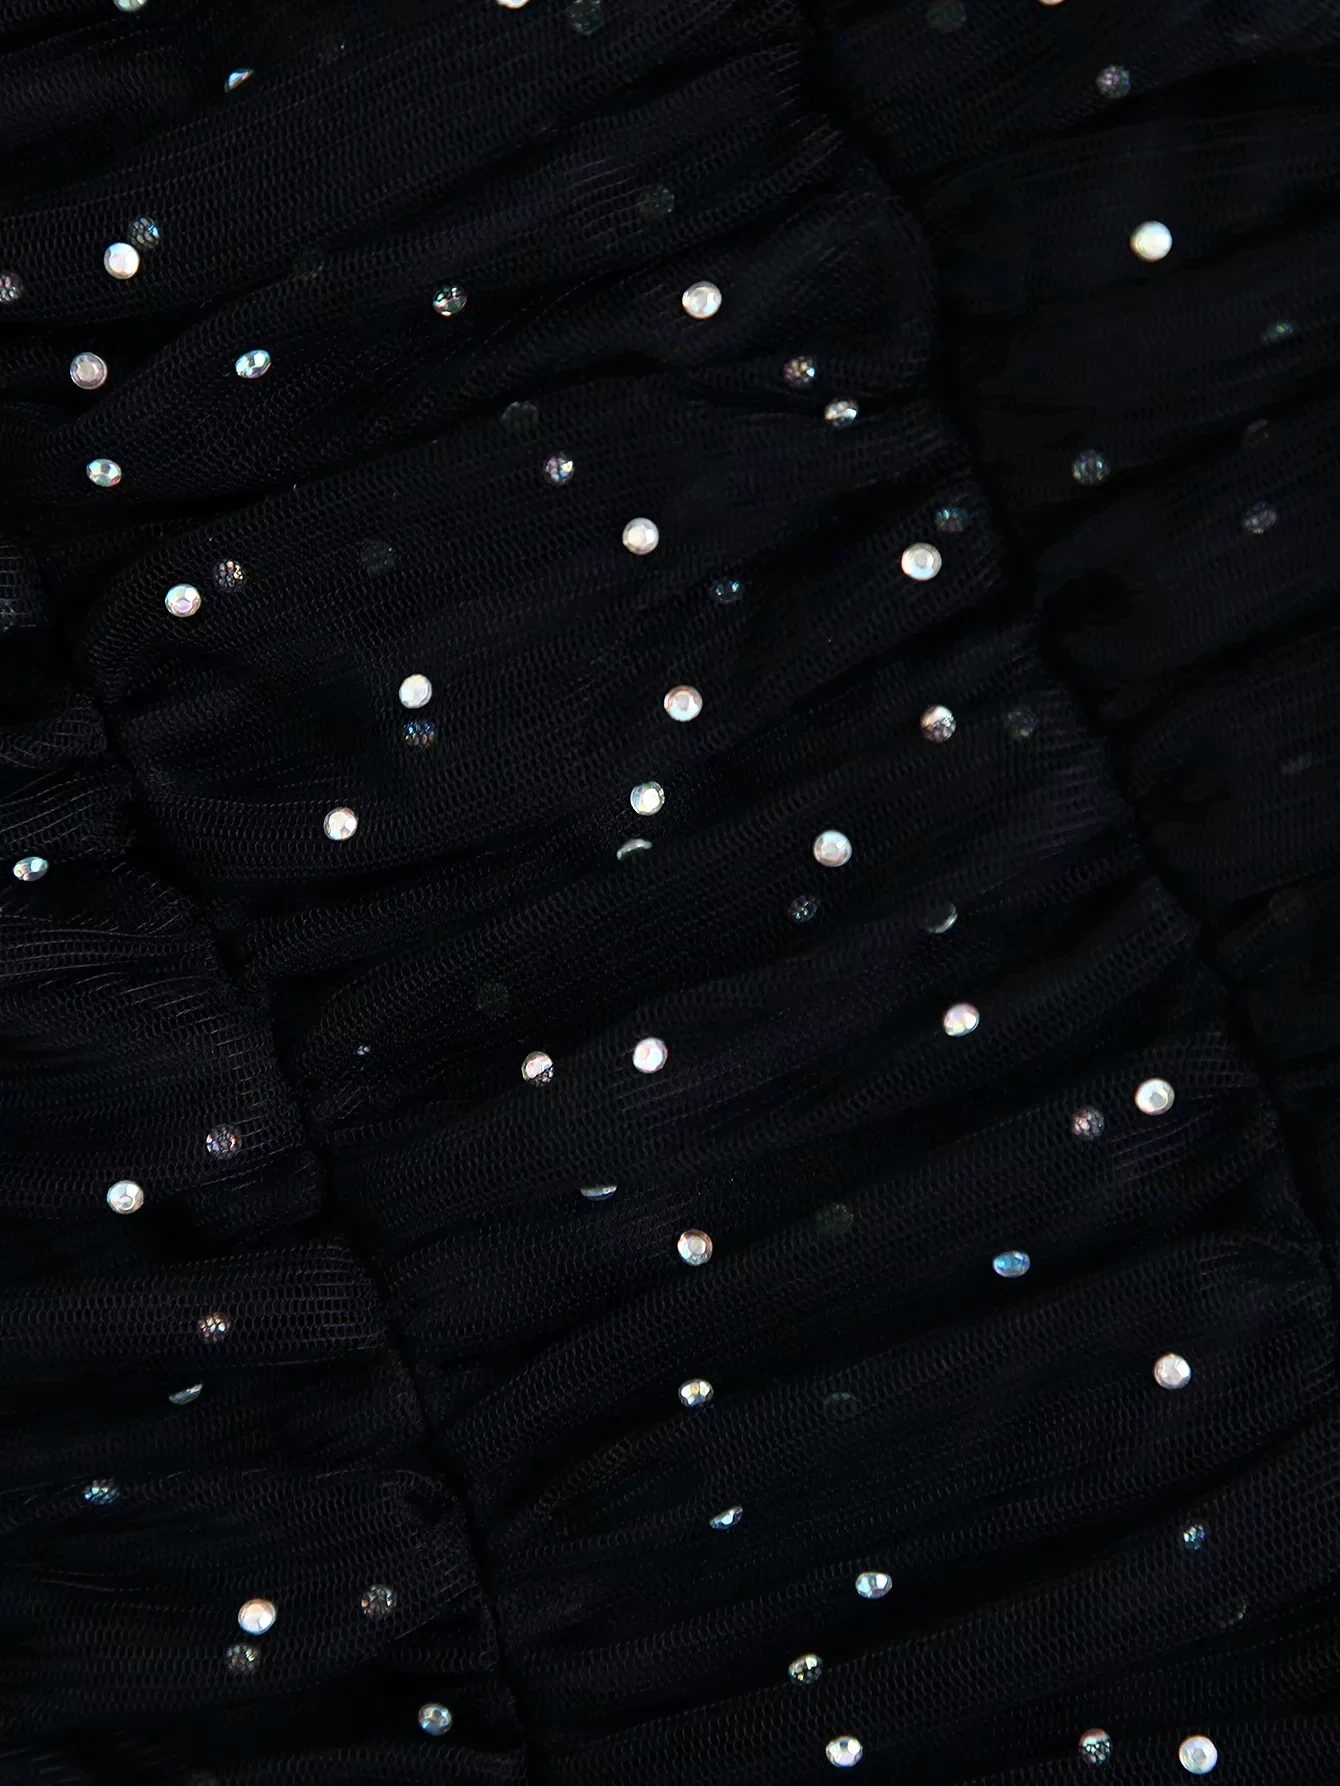 ZA Женская блузка, черная шифоновая Просвечивающая, с пышными рукавами, с блестками, топы, повседневная, винтажная, сексуальная, шикарная, женская рубашка, женская одежда